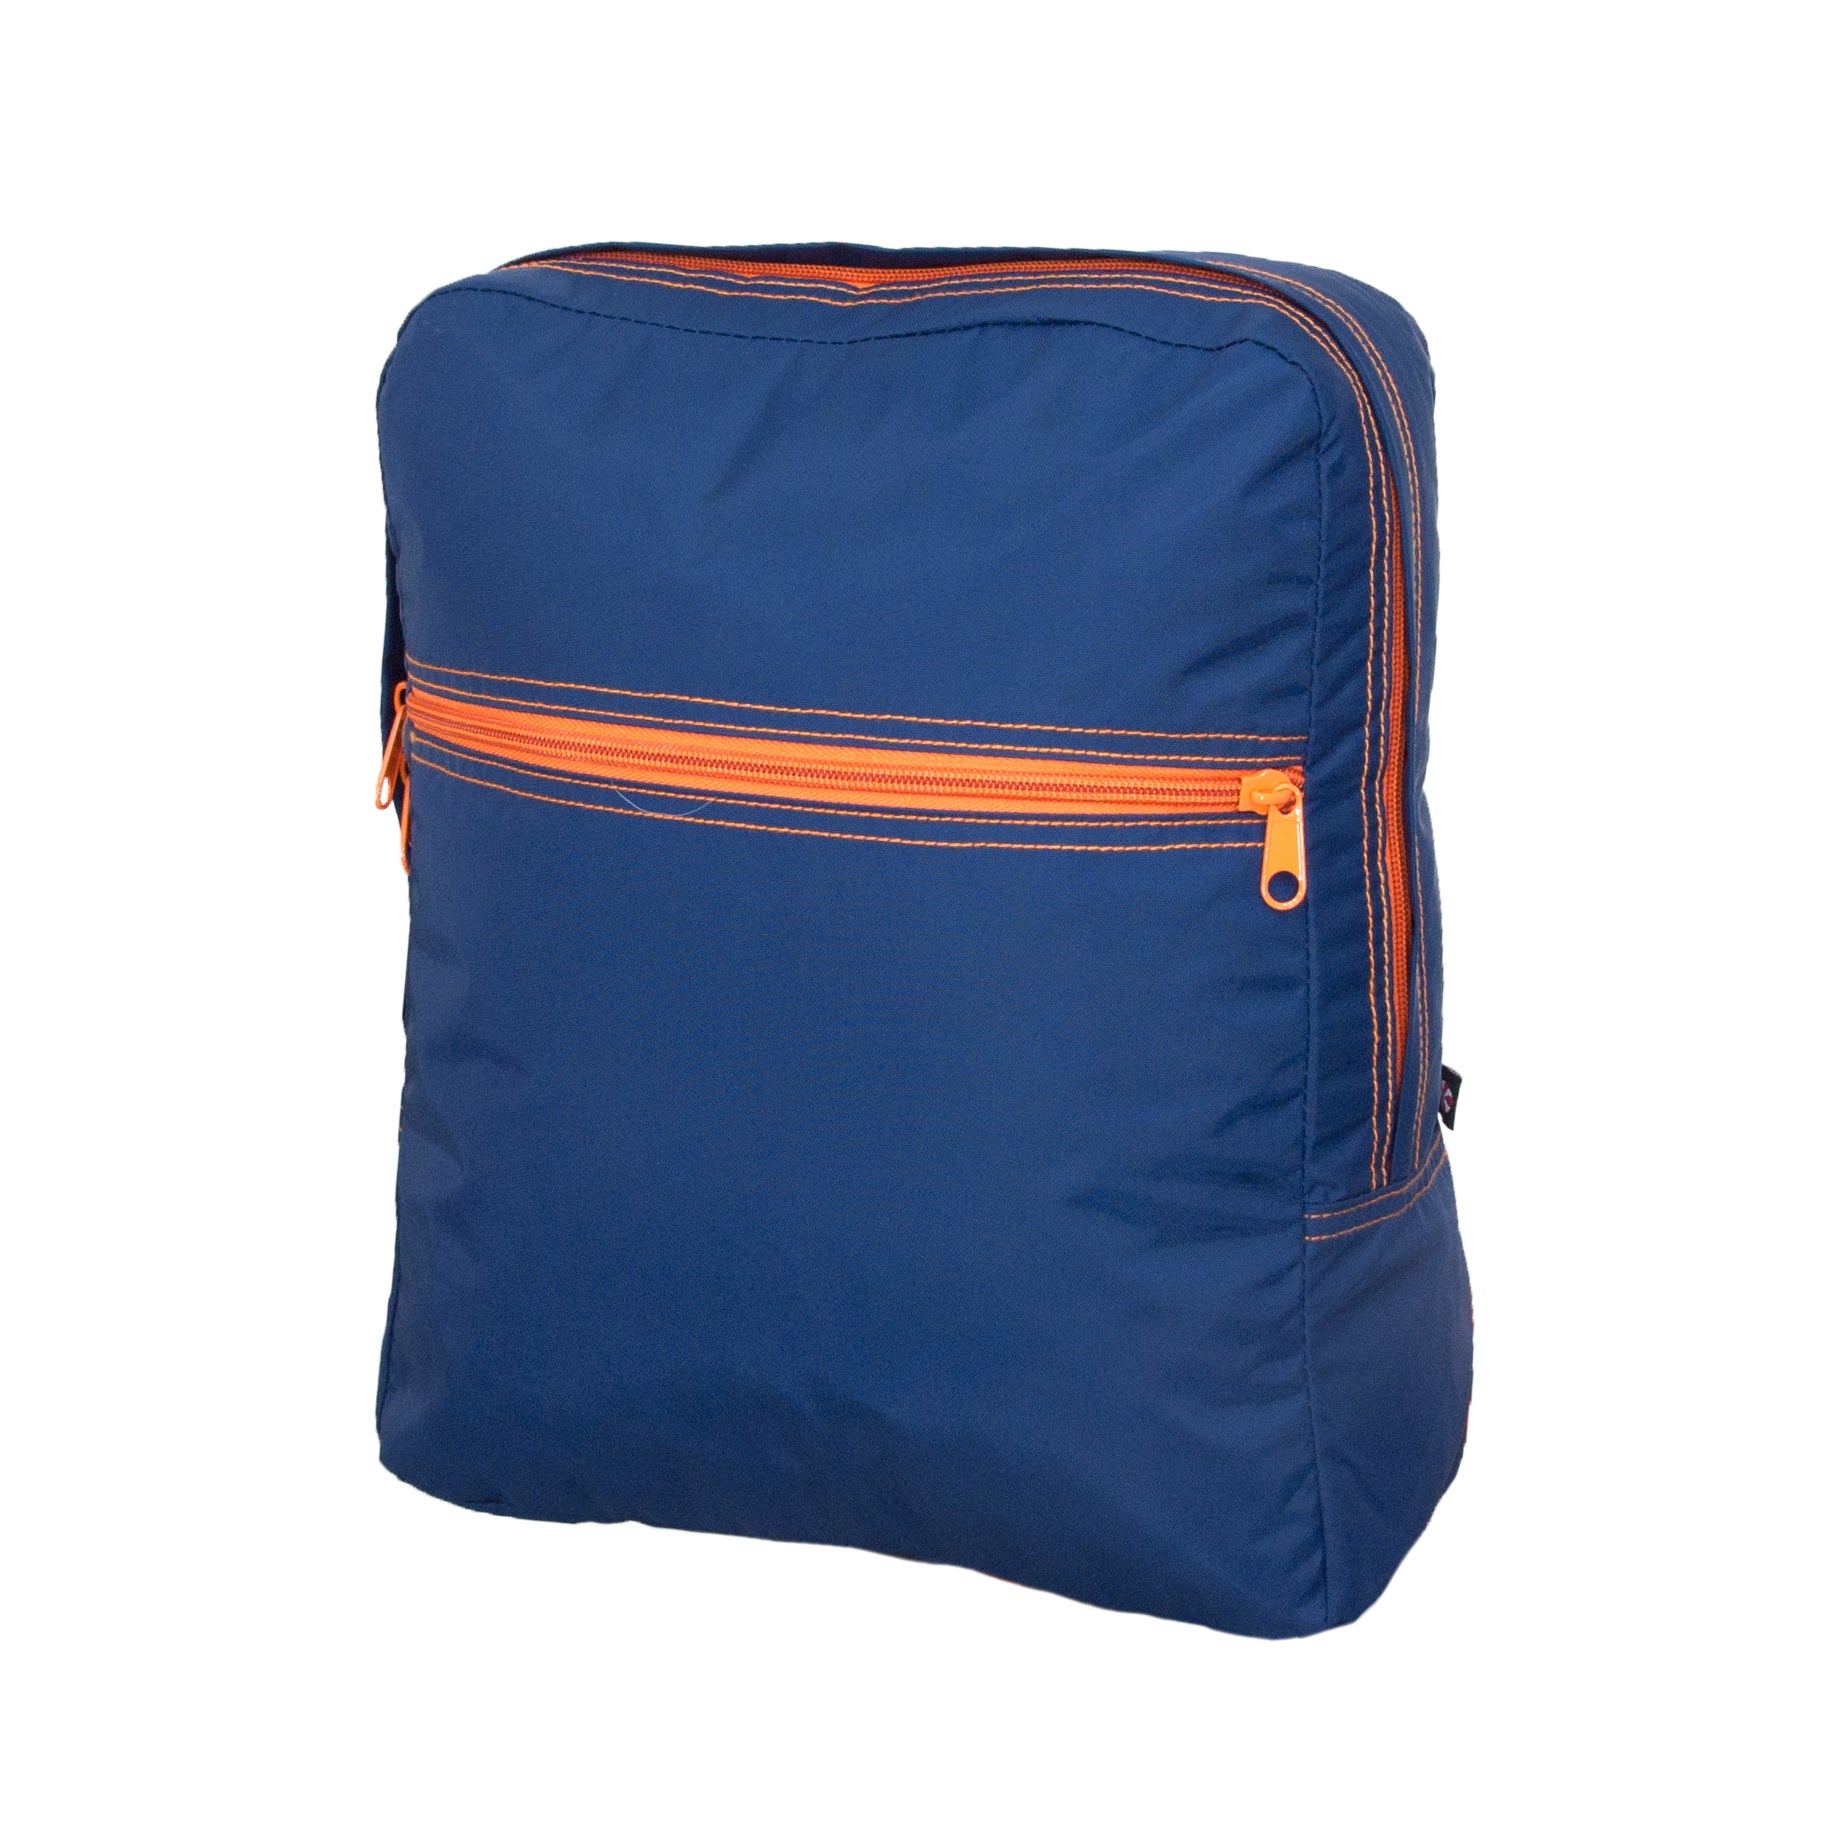 Personalized Nylon Navy / Orange Large Backpack - Give Wink